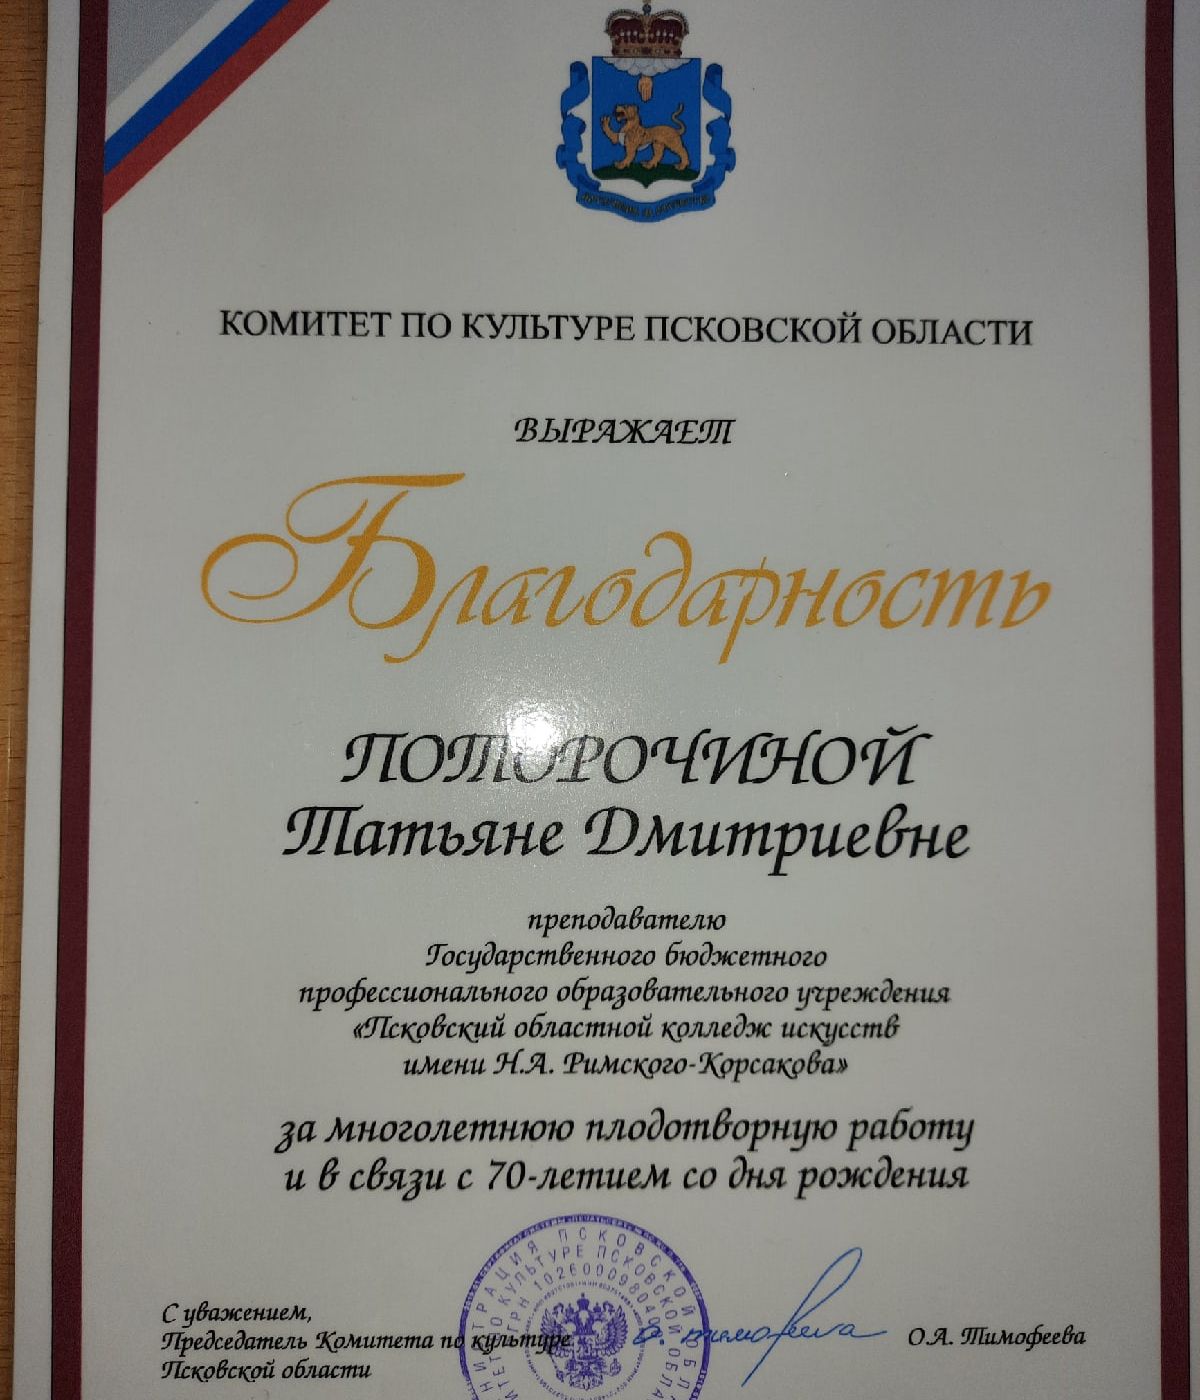 Татьяна Дмитриевна Поторочина награждена Благодарностью Комитета по культуре Псковской области